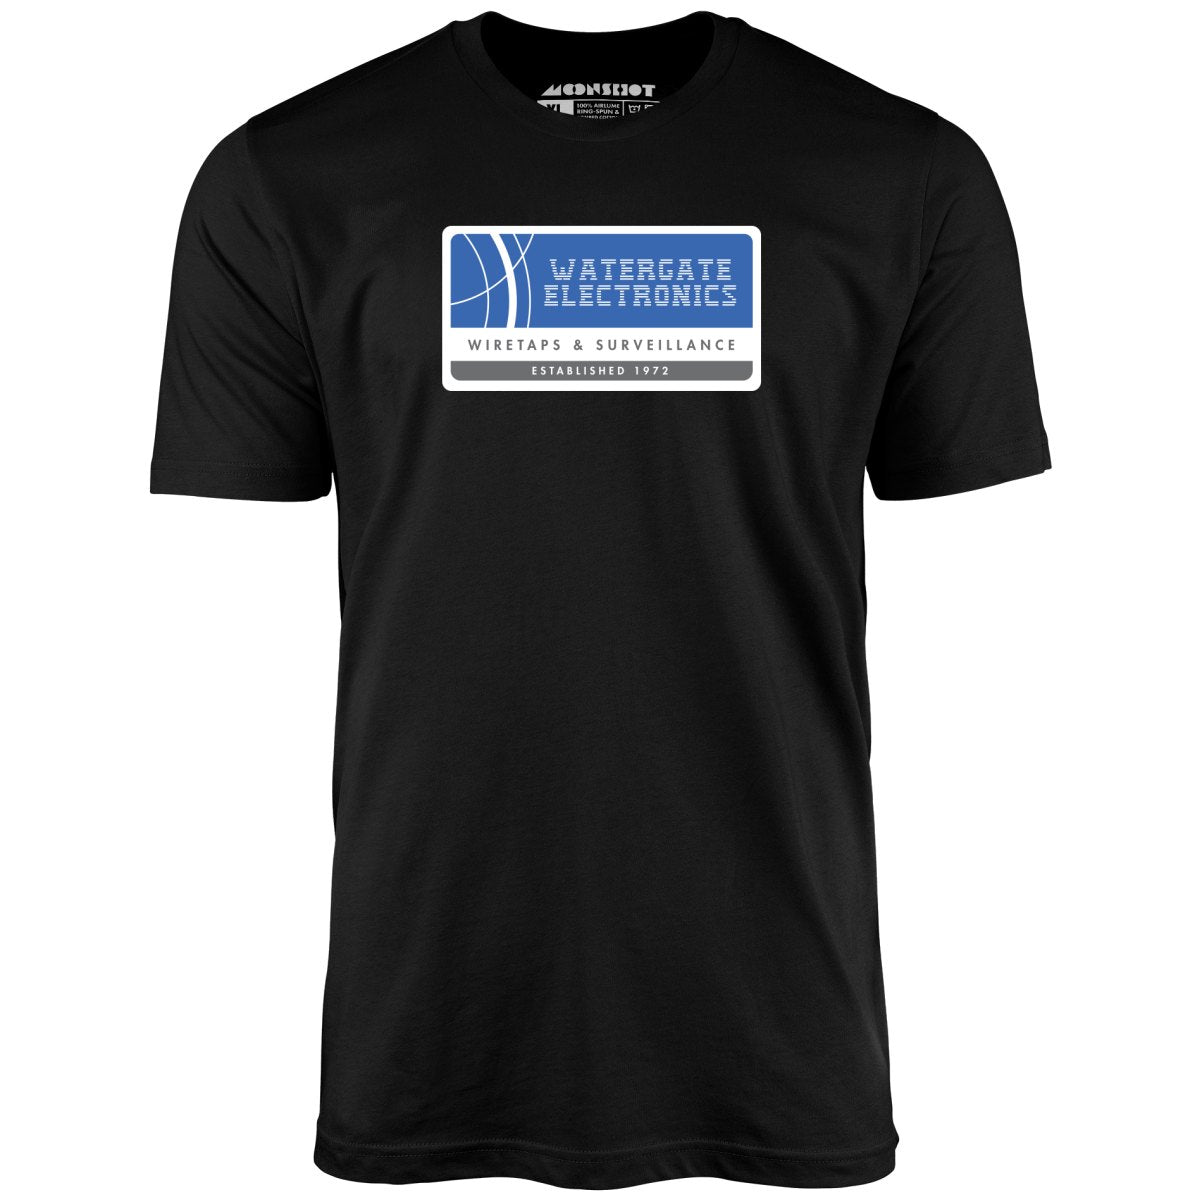 Watergate Electronics - Unisex T-Shirt